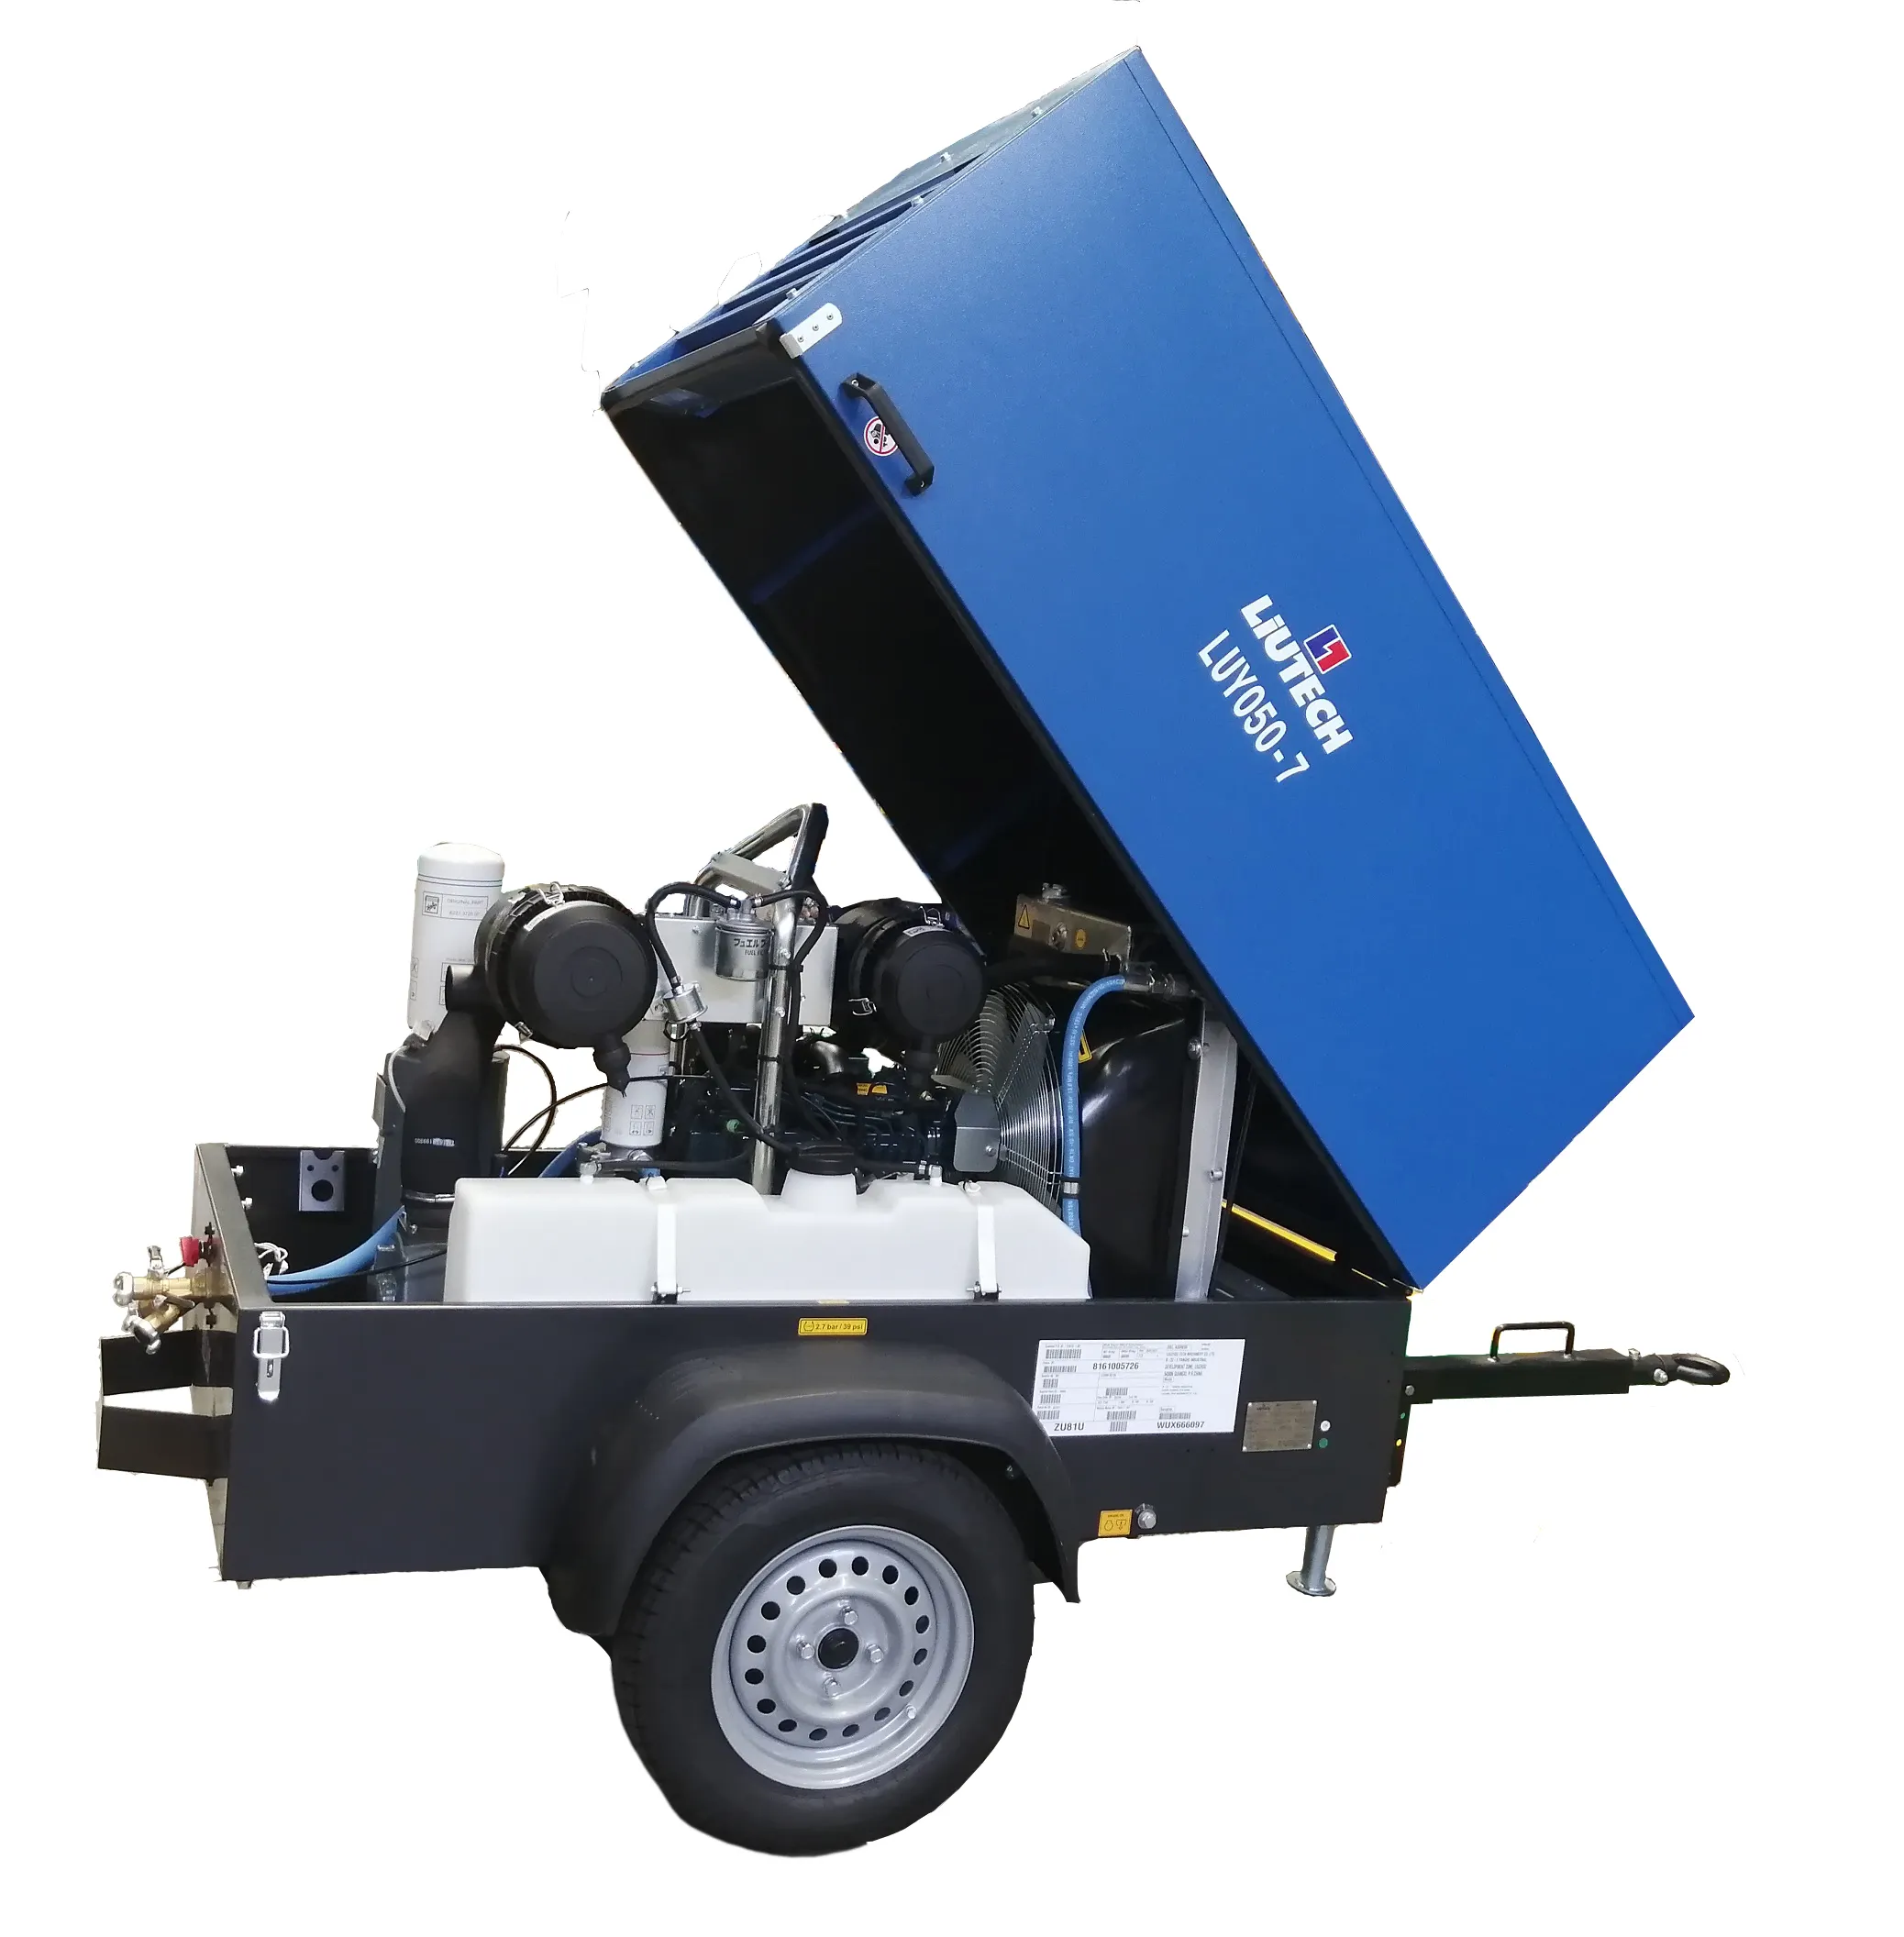 Compressore pneumatico Chicago equivalente LUY050-7 CPS 175-100 185 Cfm compressore d'aria